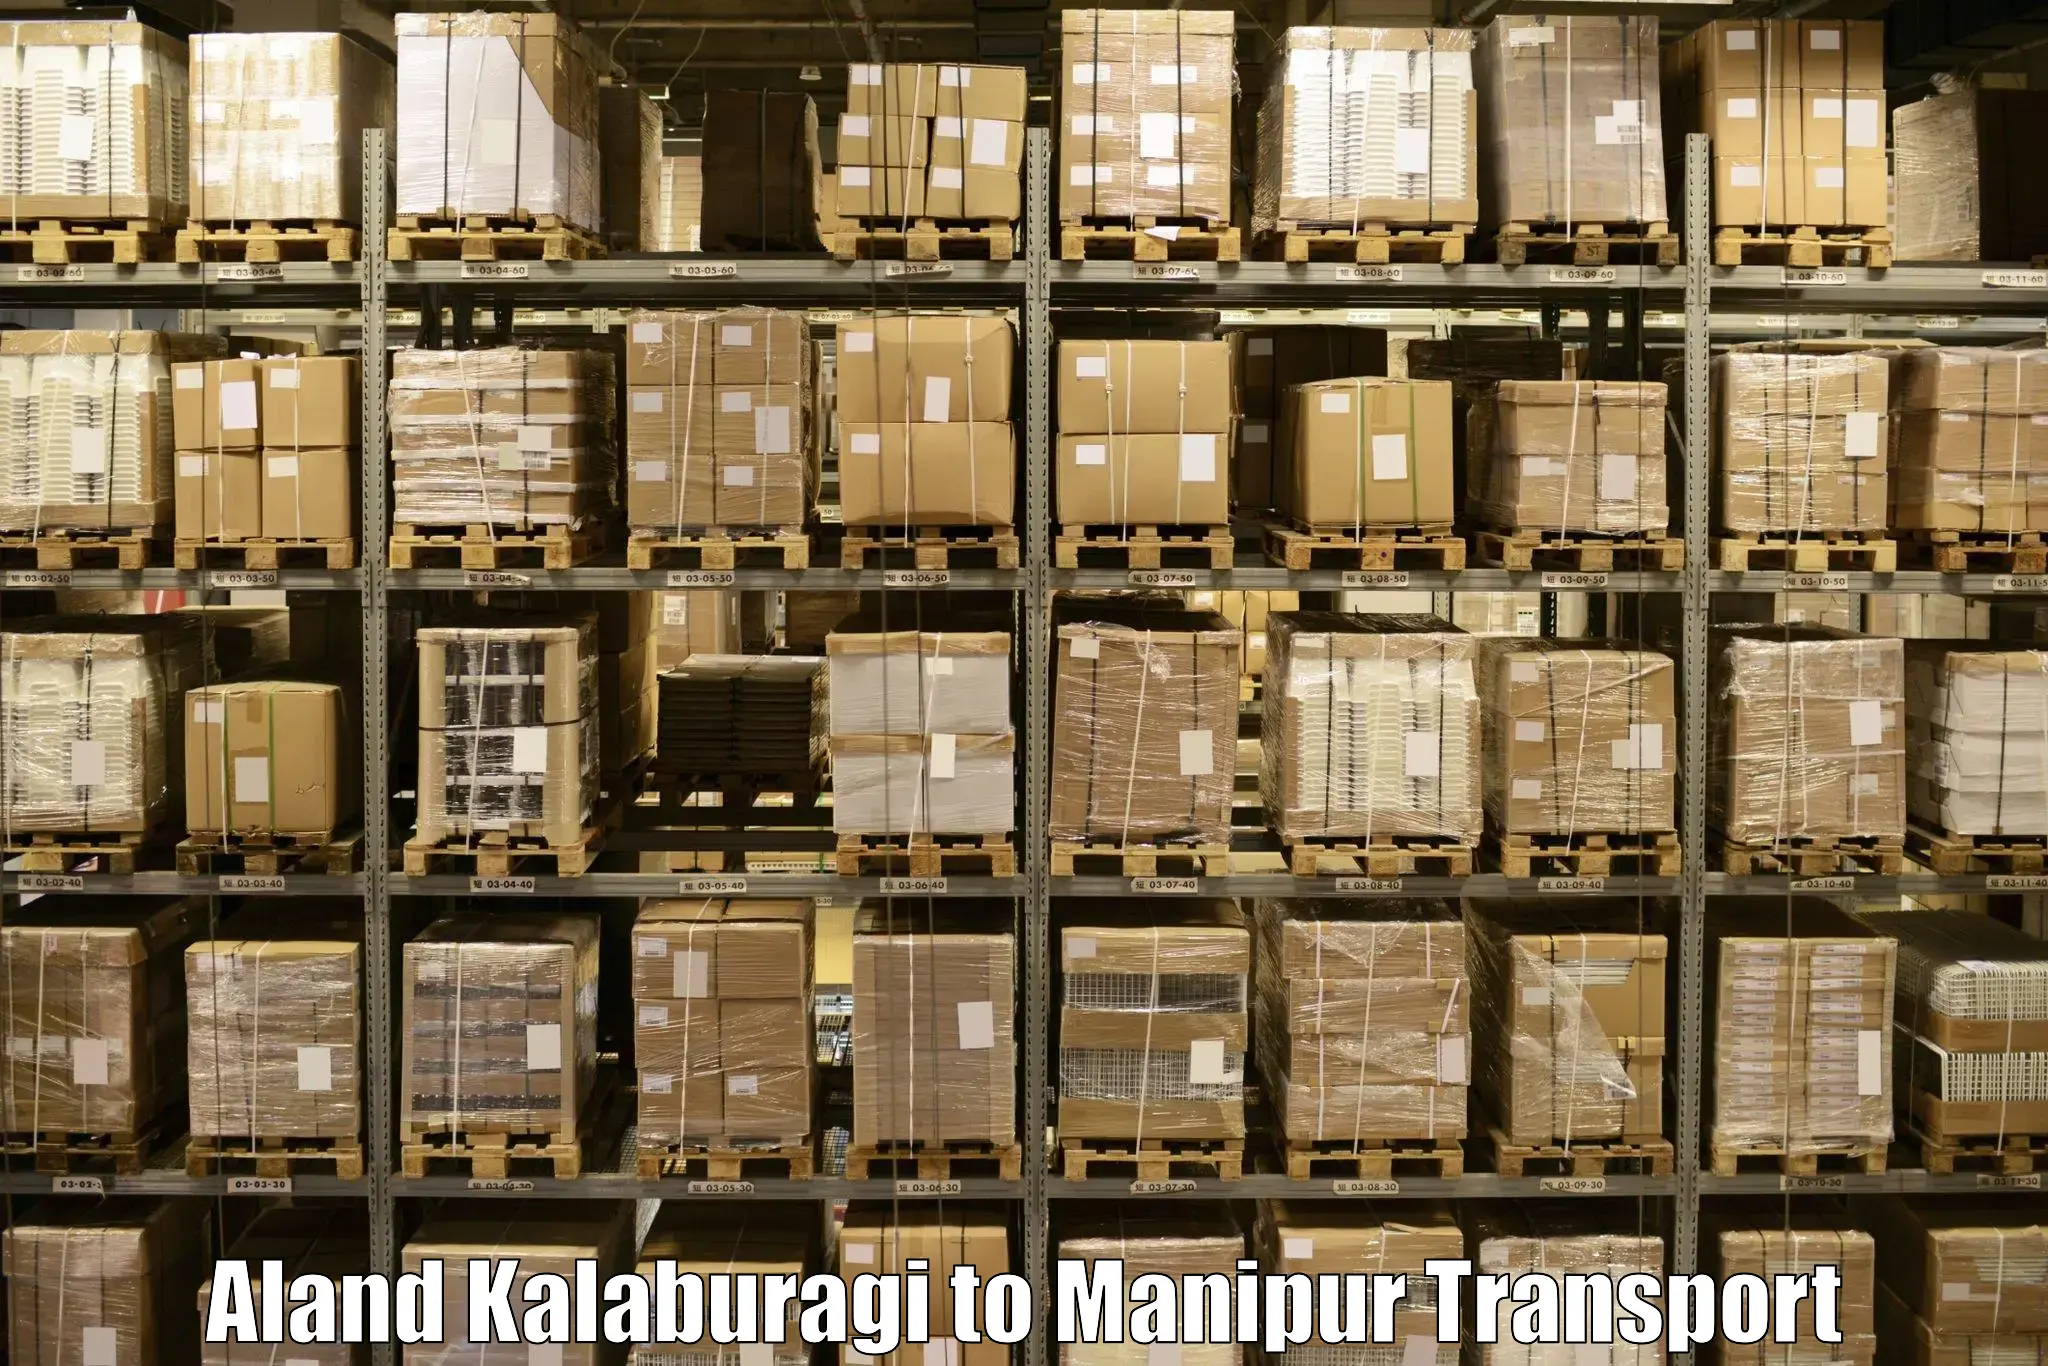 Daily parcel service transport Aland Kalaburagi to Kaptipada